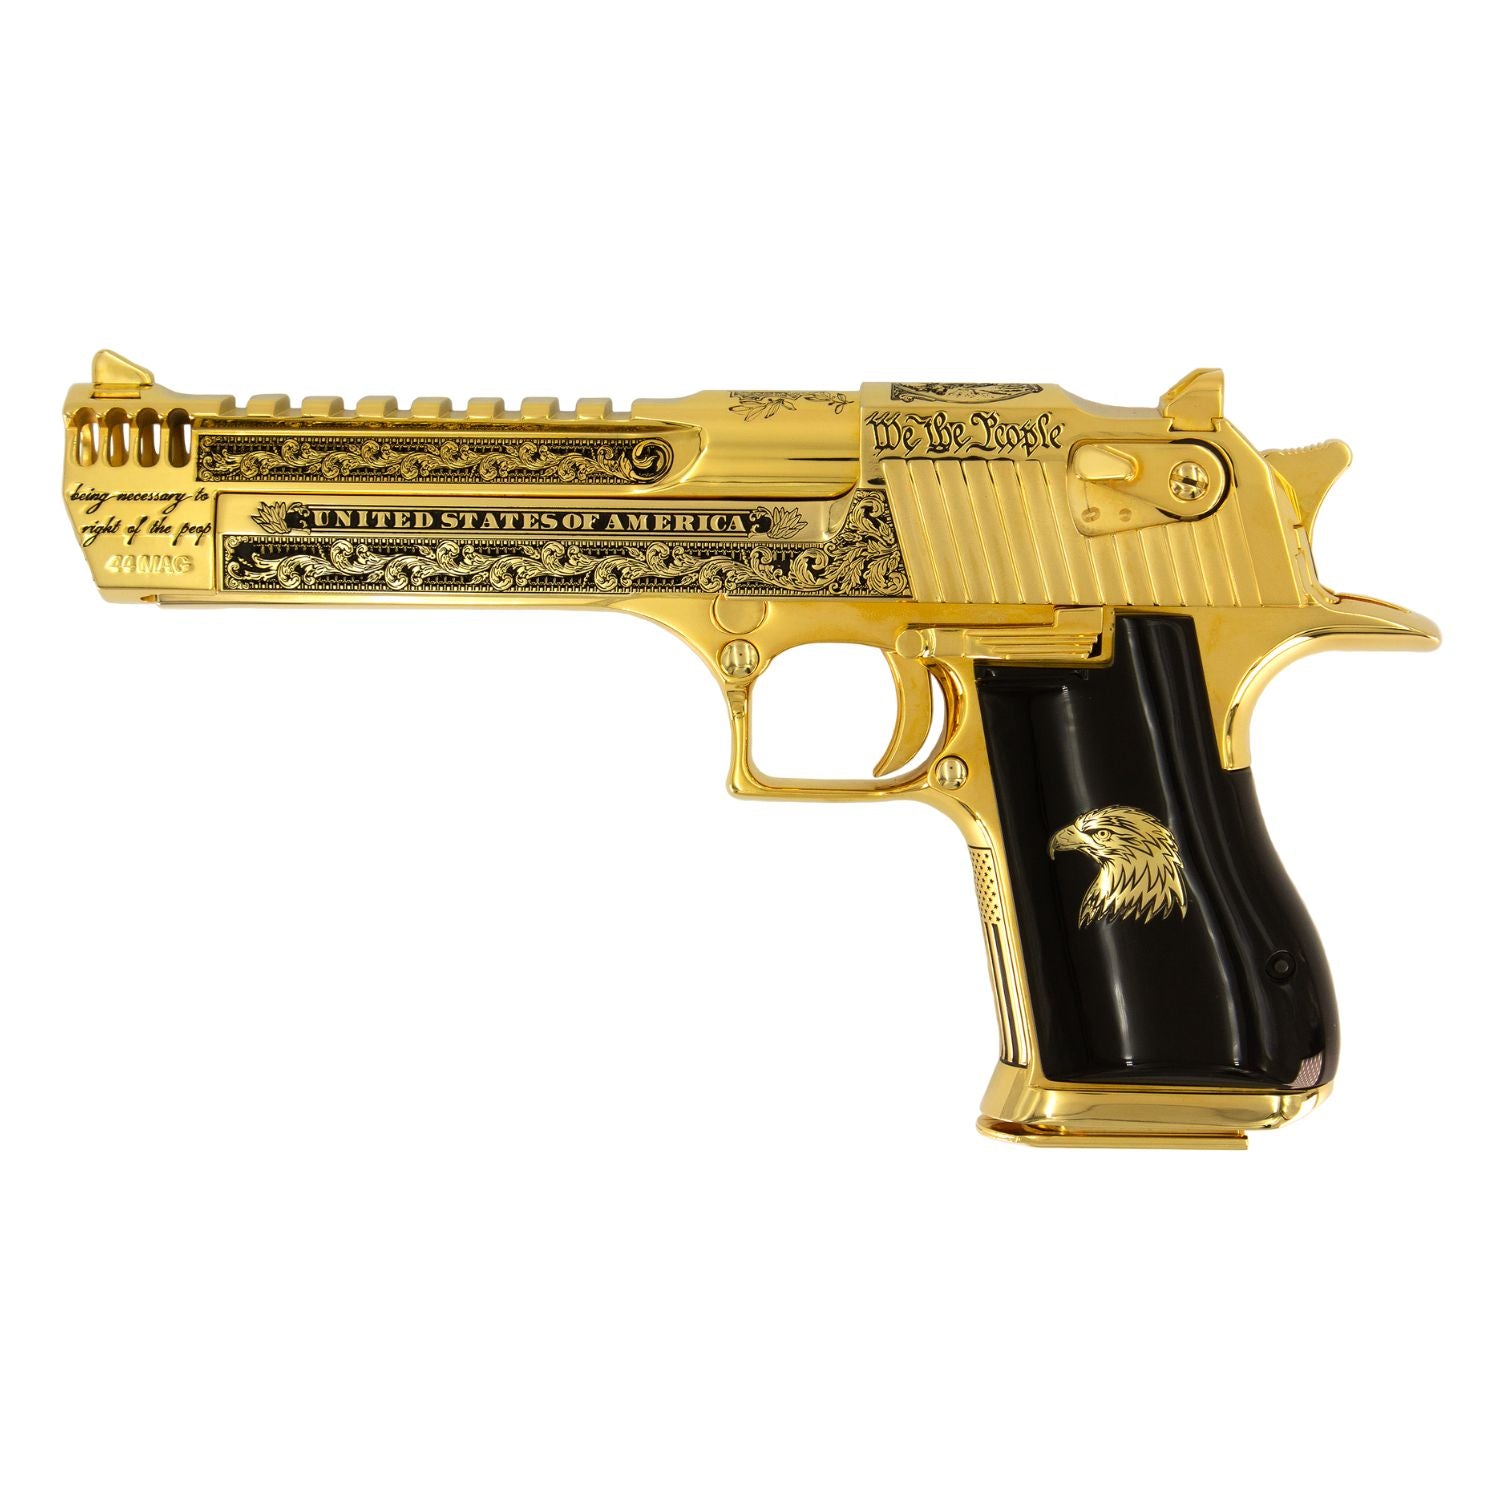 Desert Eagle Patriot 44 Rem Mag, 6", 24kt Gold Plated and Engraved, Magnum Research, SKU: 6966446620774, 761226032281 